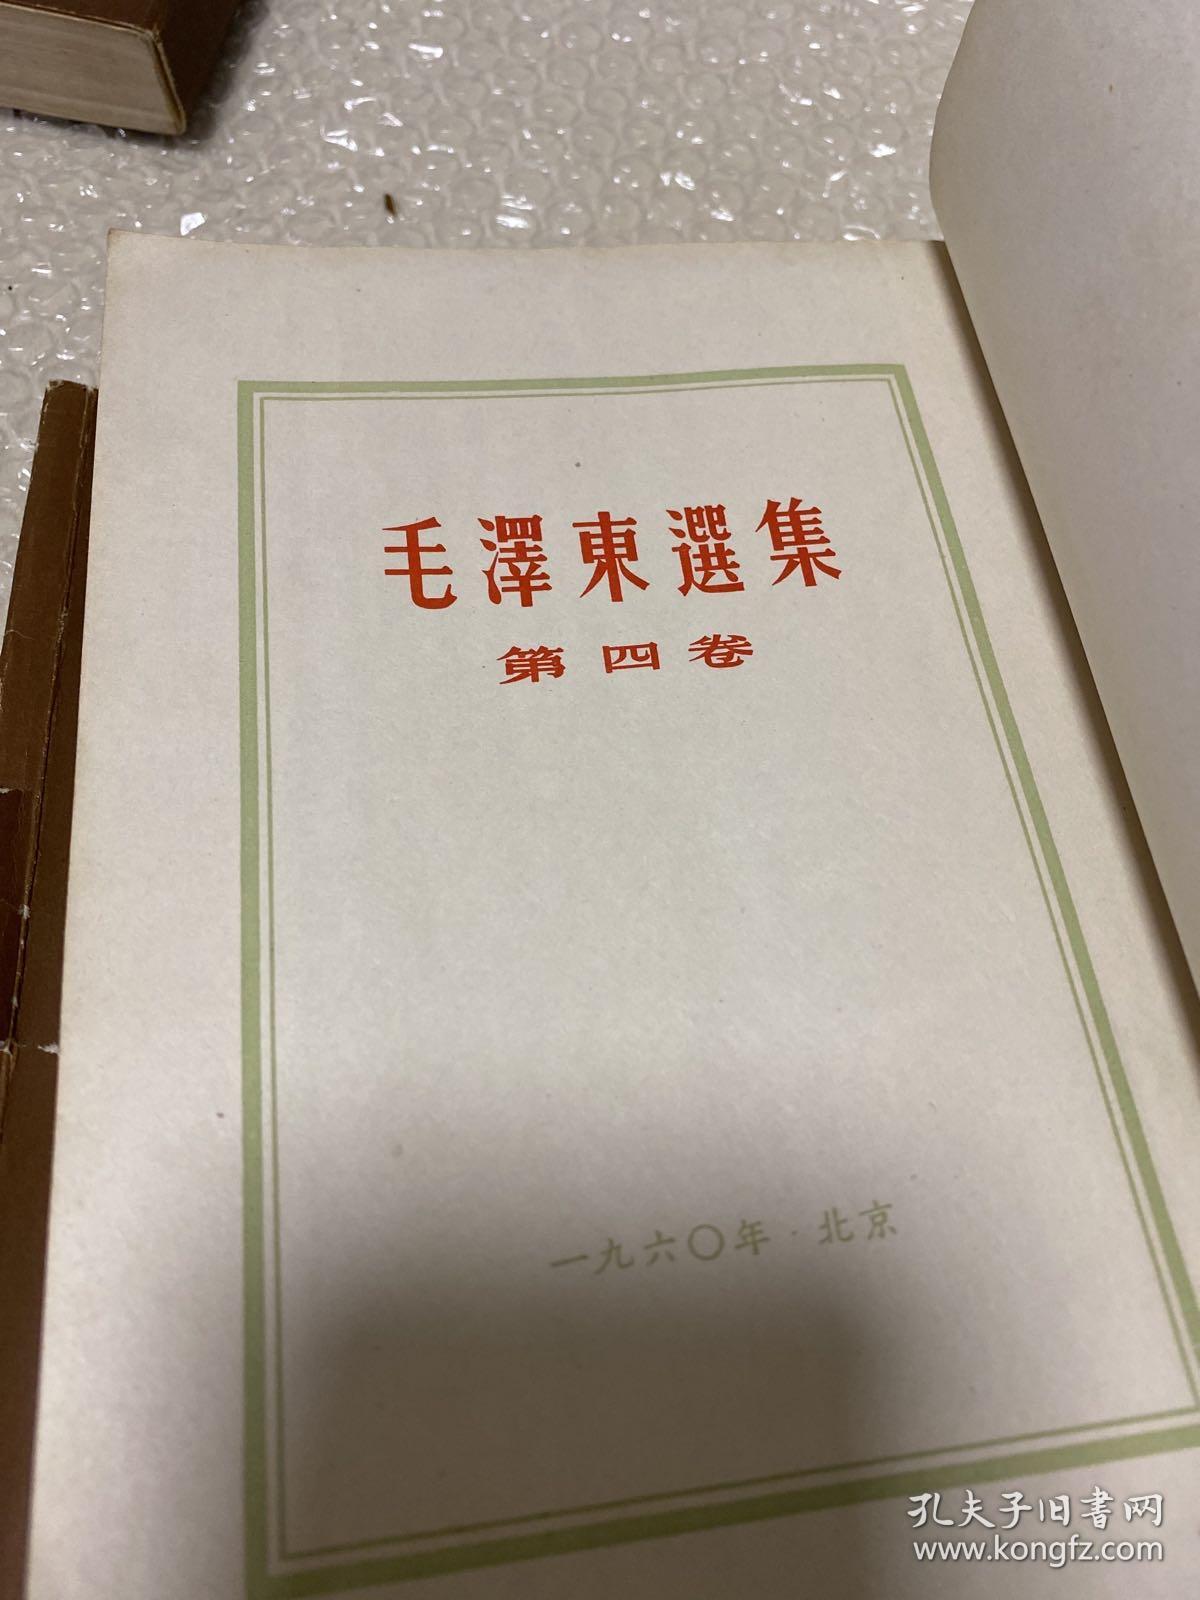 毛泽东选集5册合售。(竖排版4本)（第一卷第二卷是1964年）（第三卷是1953年）（第四卷1960年）(第五卷1977年)以图为准。